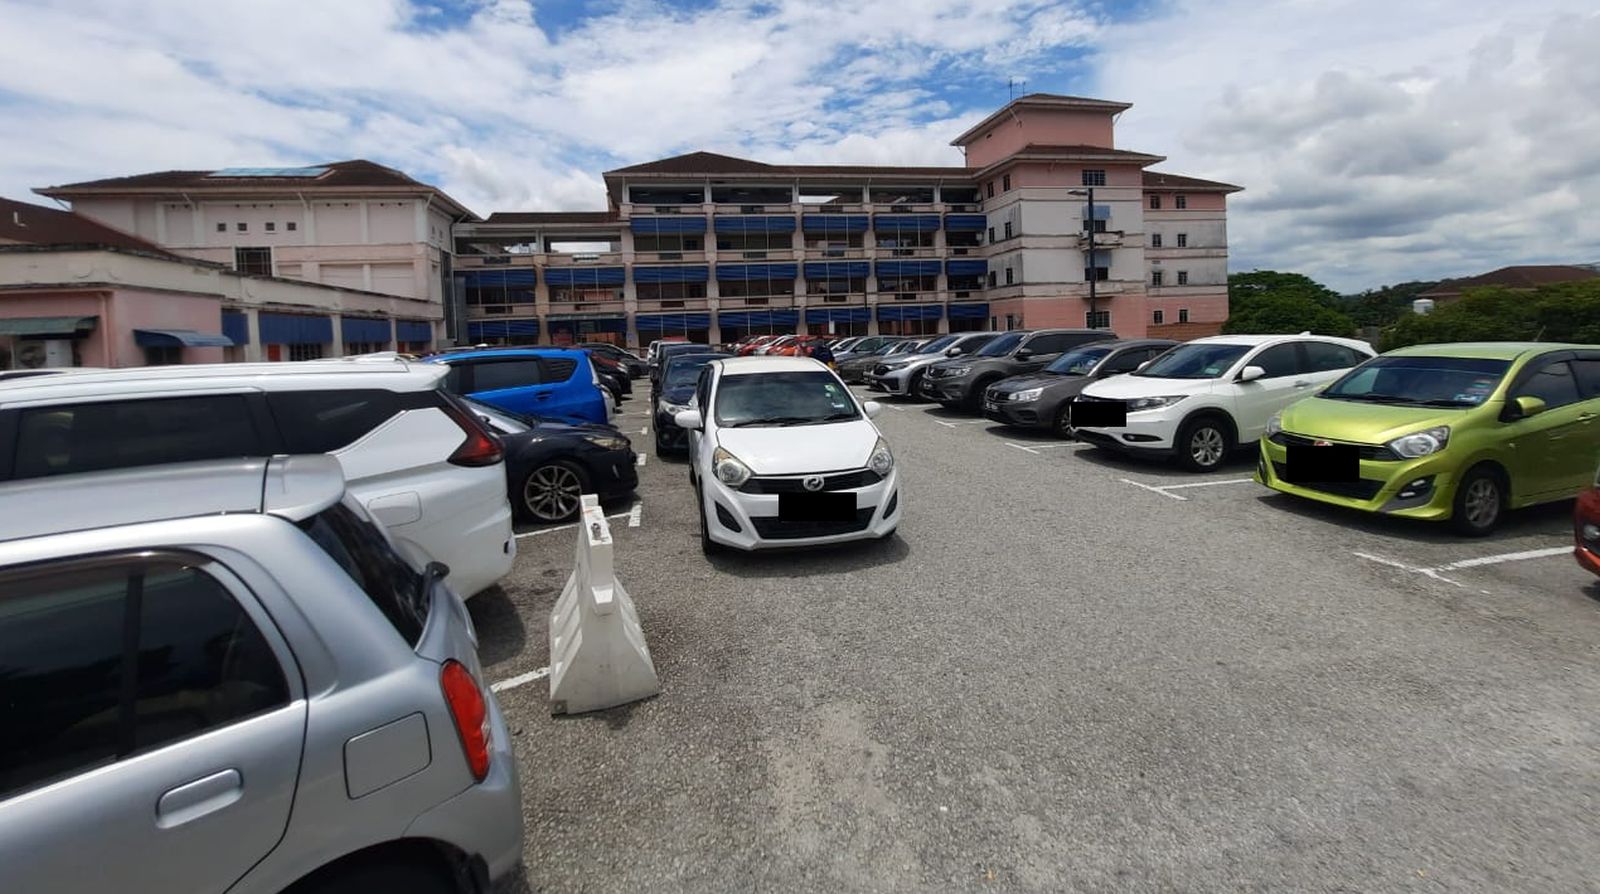 （古城封面主文）马六甲中央医院一站式停车场11月操作，解决停车位不足问题